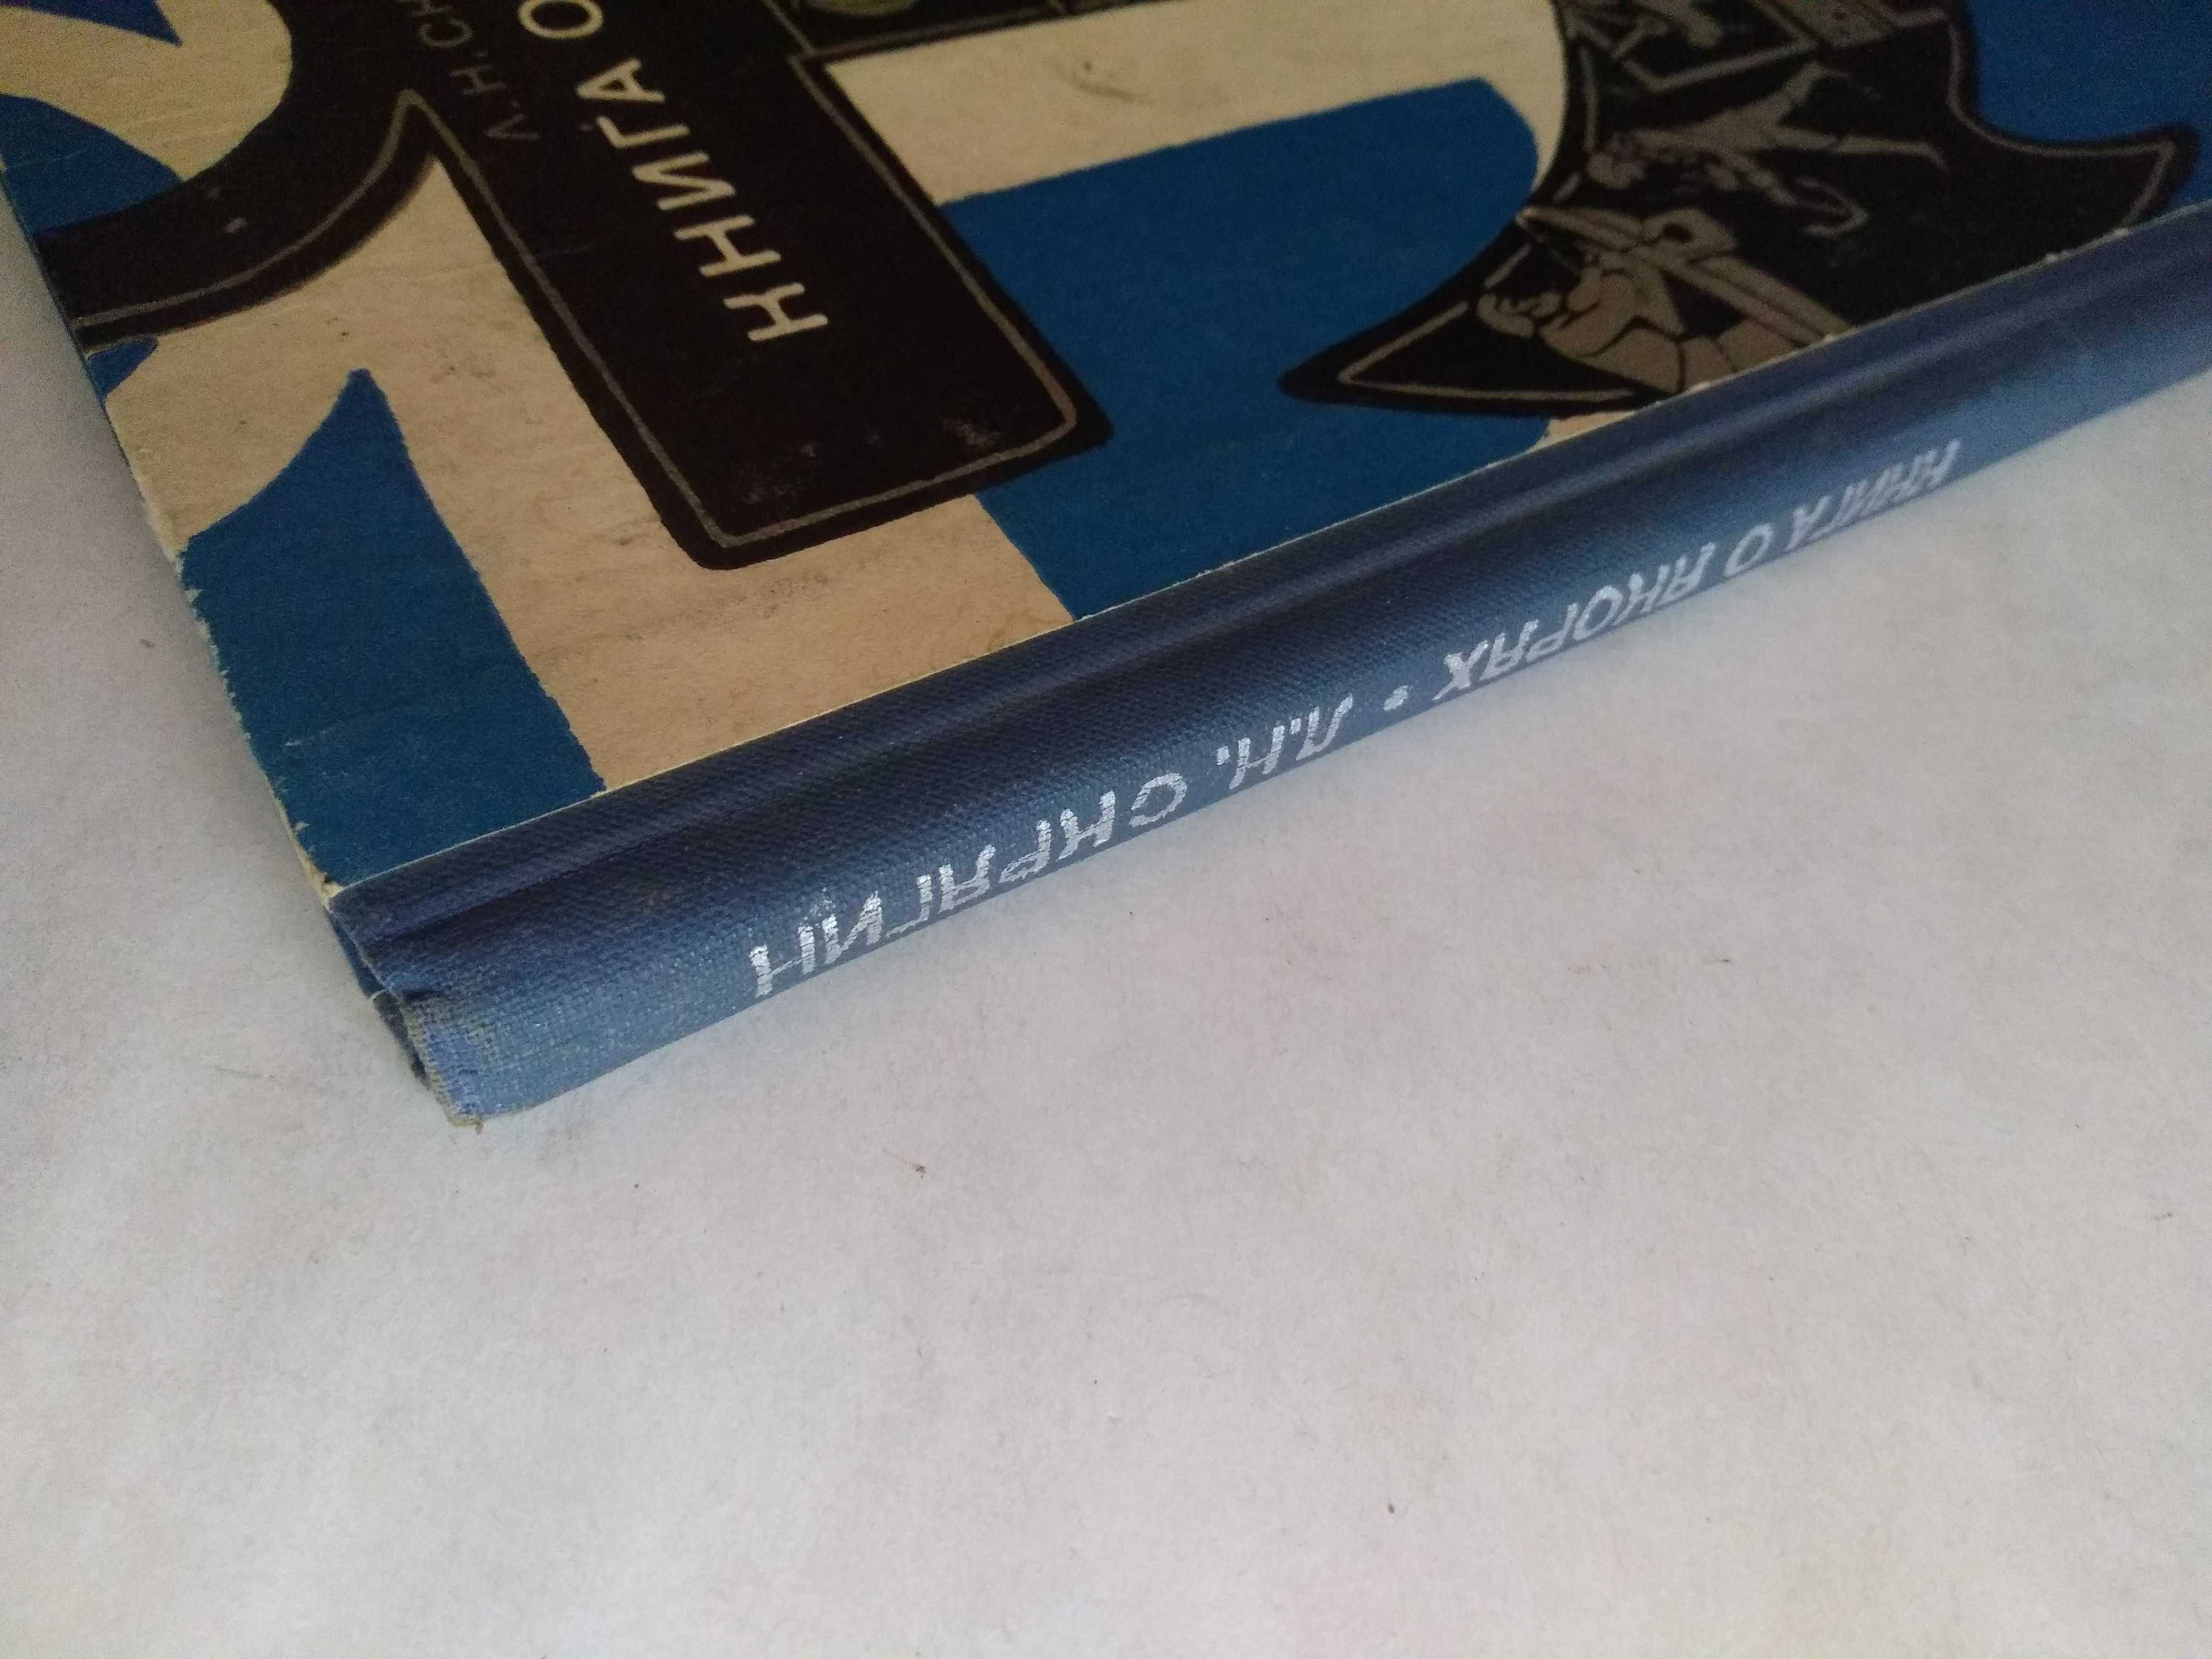 Книга о якорях, Скрягин, 1973, флот, море